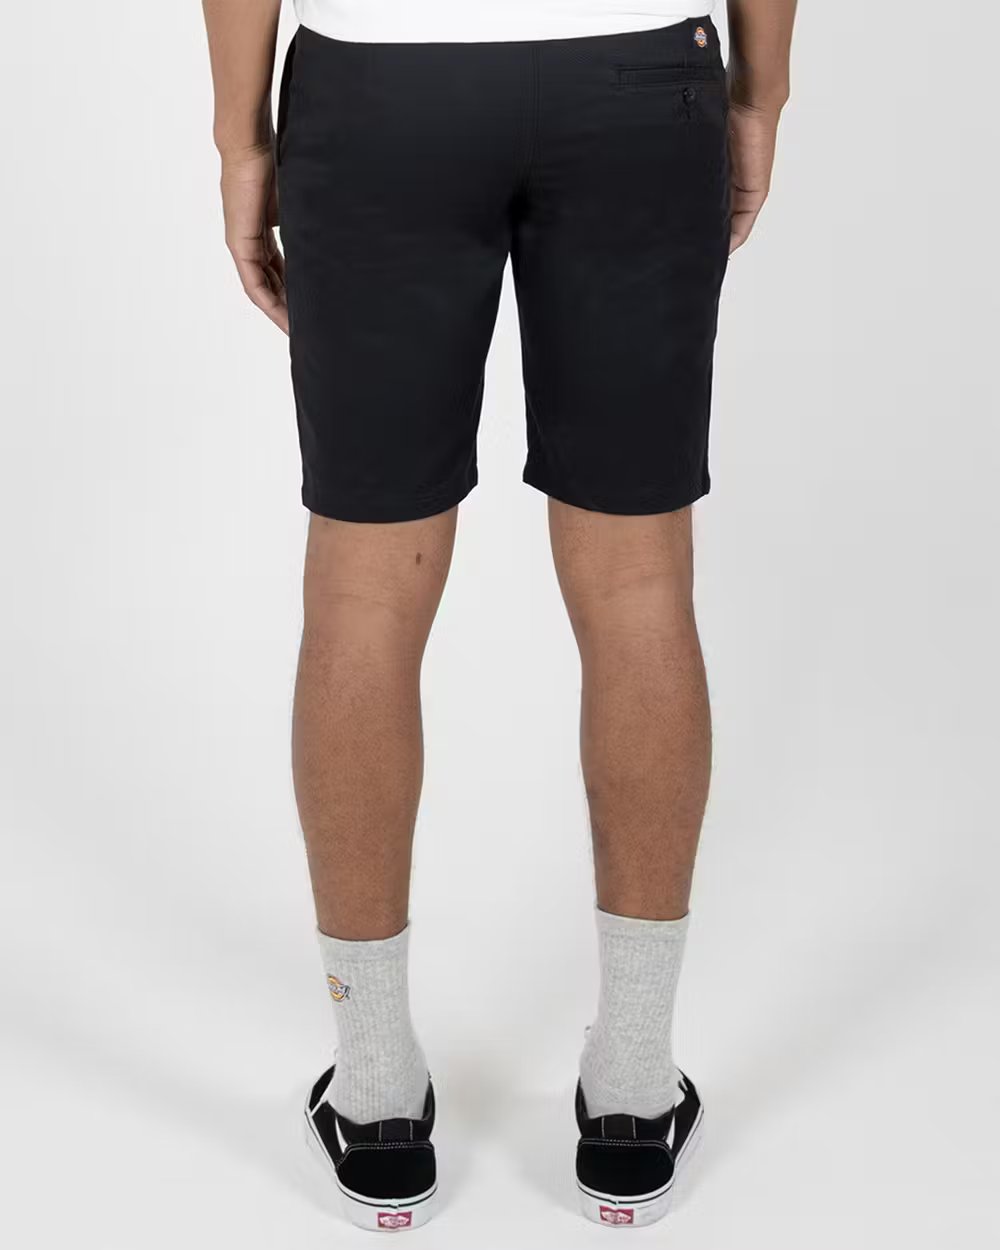 DICKIES 818 Slim Fit 10 Shorts - Black - VENUE.